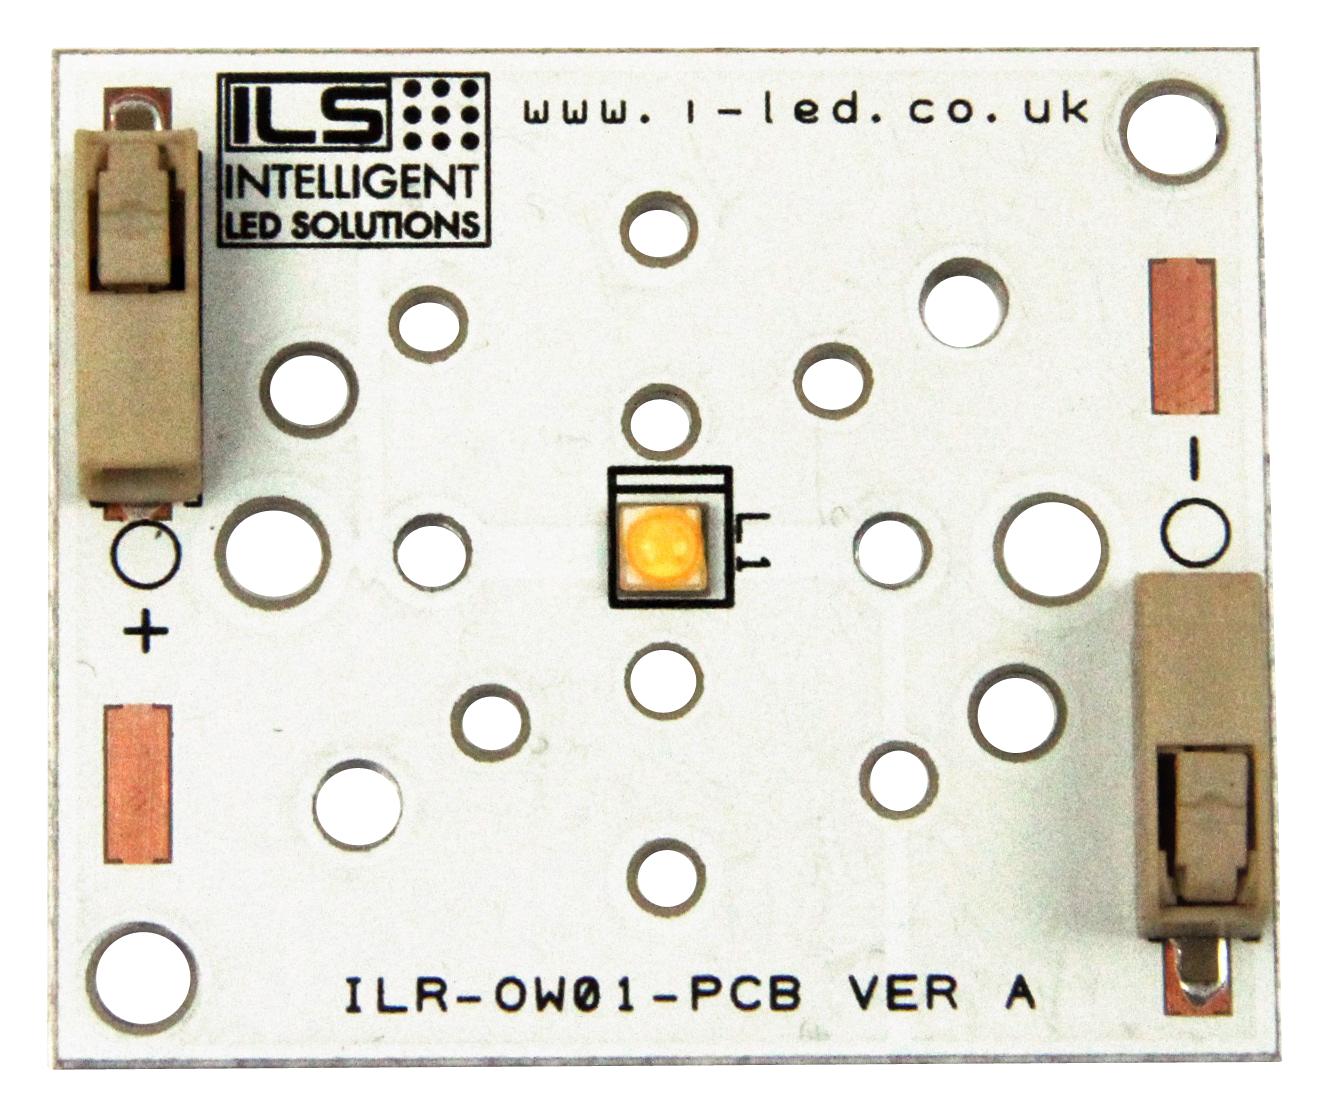 ILR-XP01-S300-LEDIL-SC201.